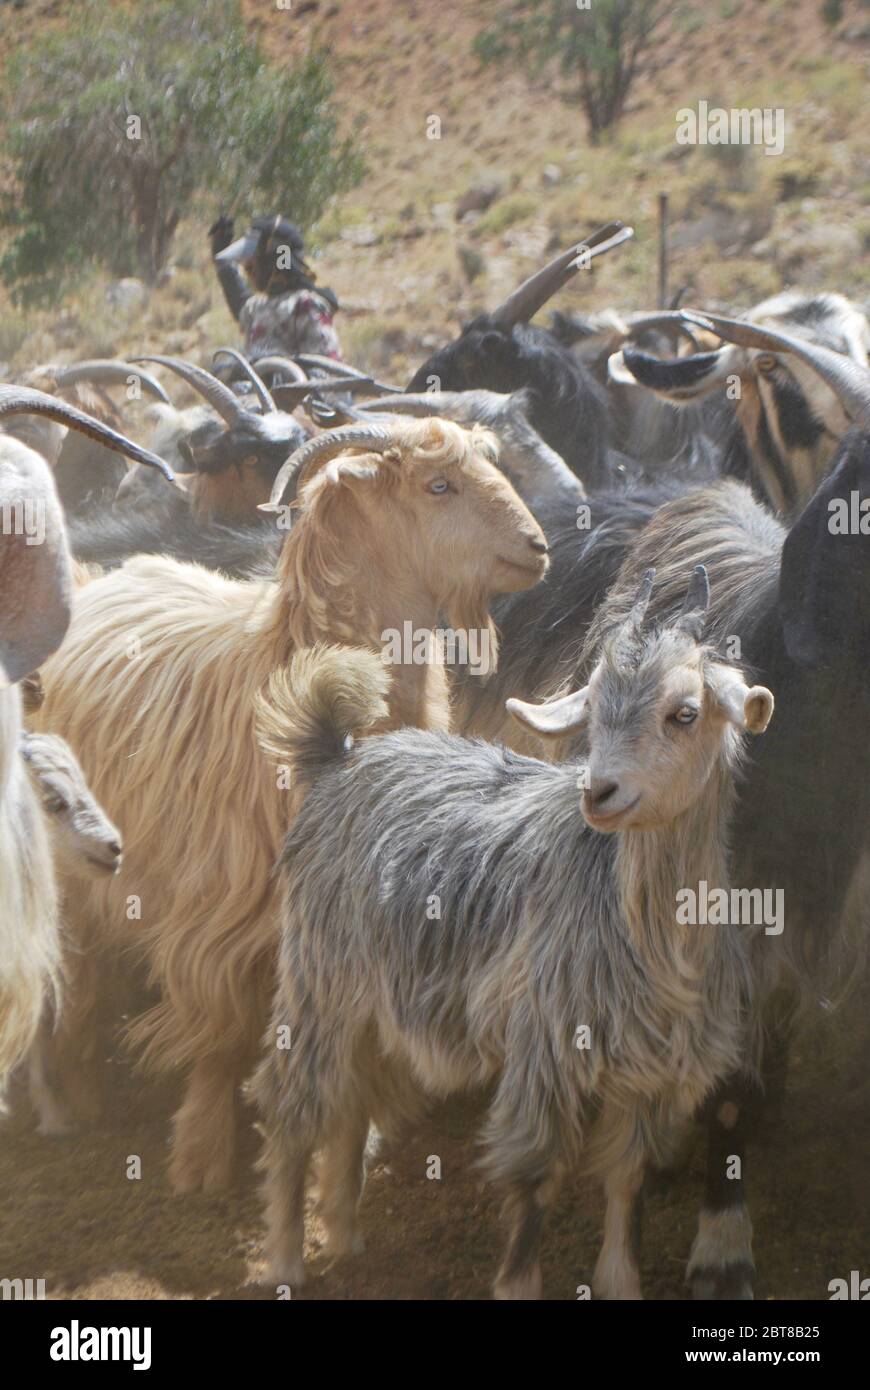 goats, Zagros mountains, Iran Stock Photo